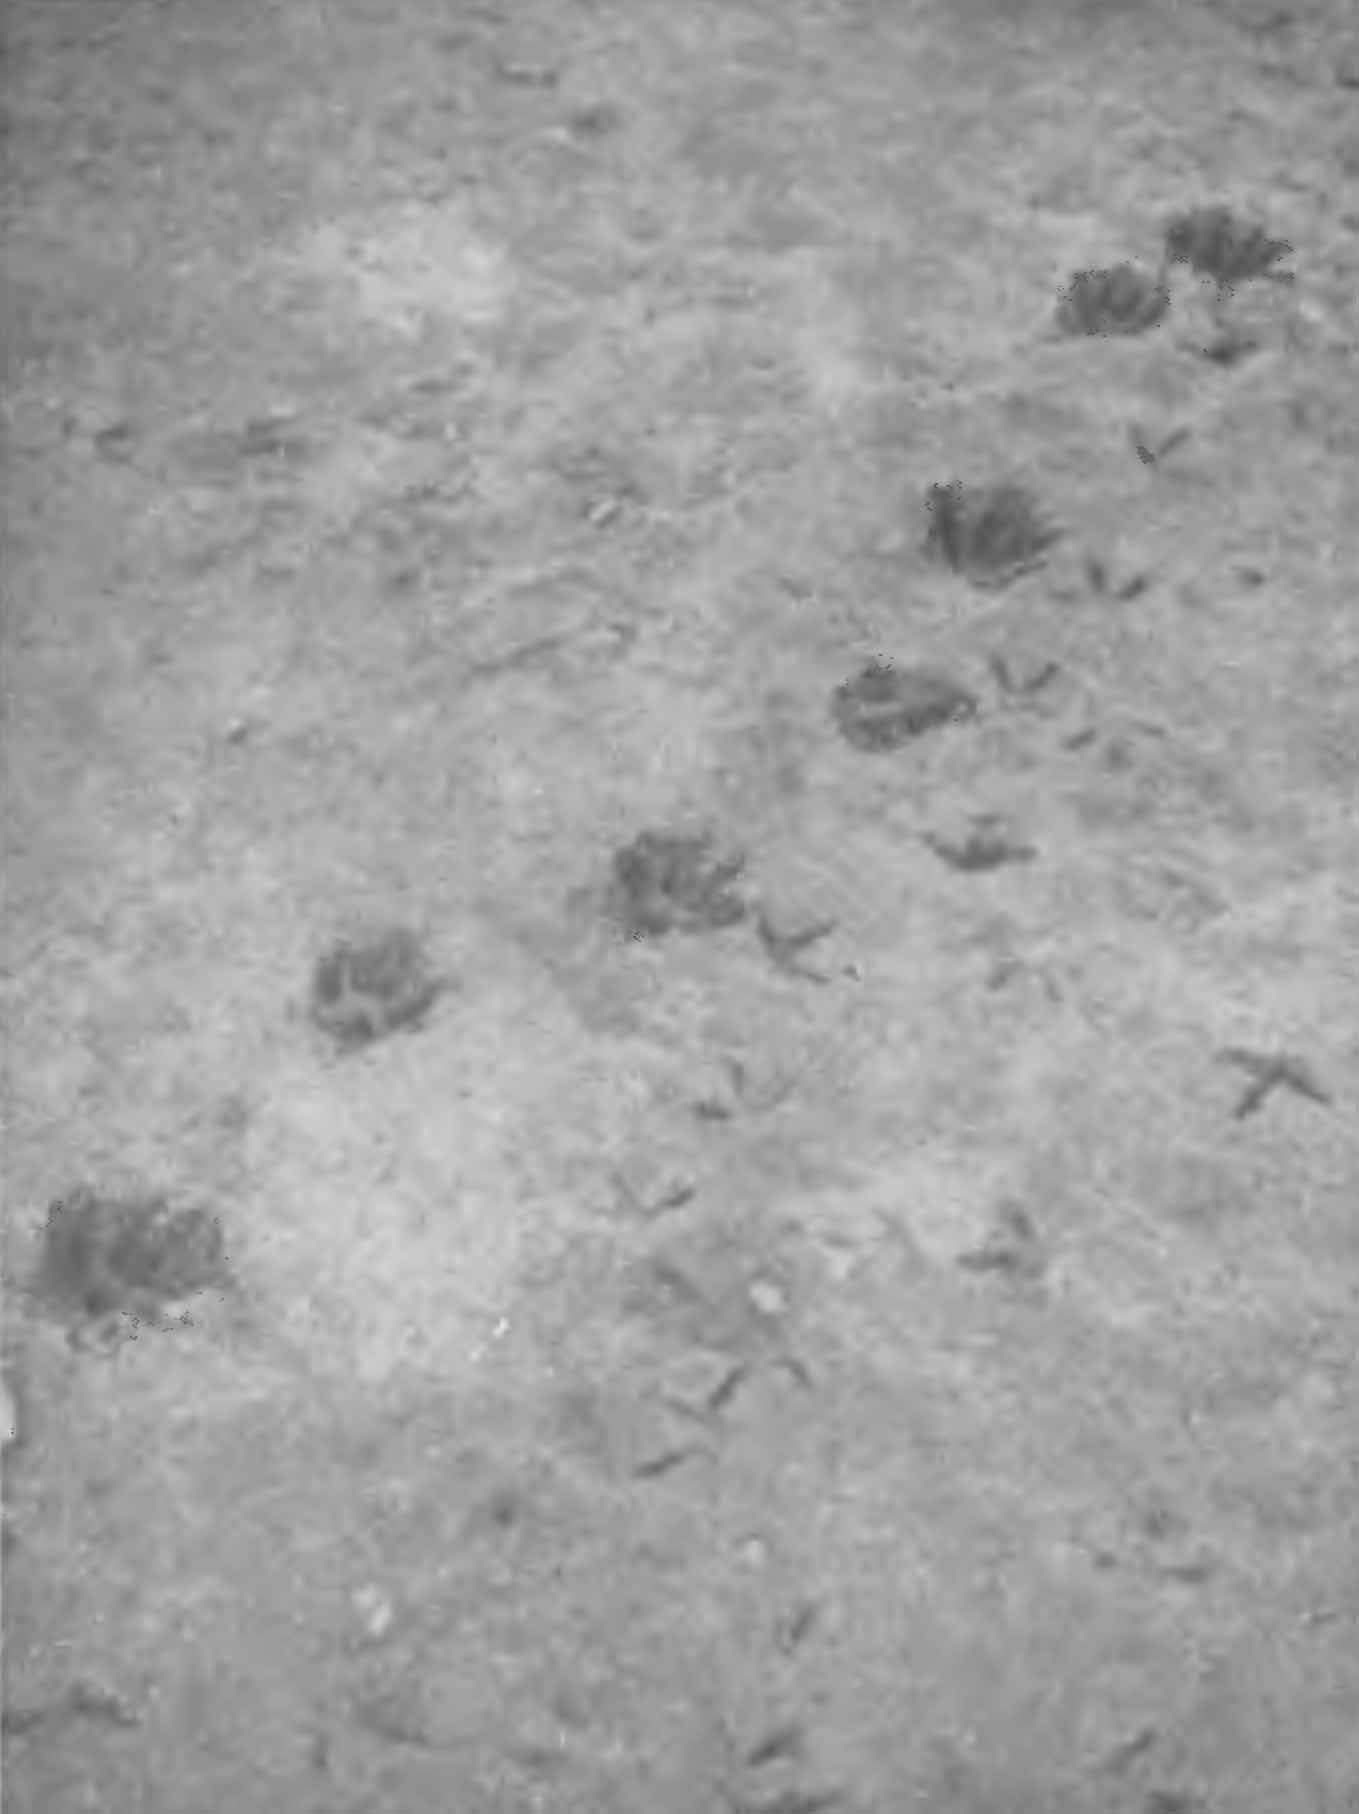 Рис. 4. Следы енотовидной собаки. Ростовская обл., лето 1952 г. (Фото Ю. М. Ралль).
